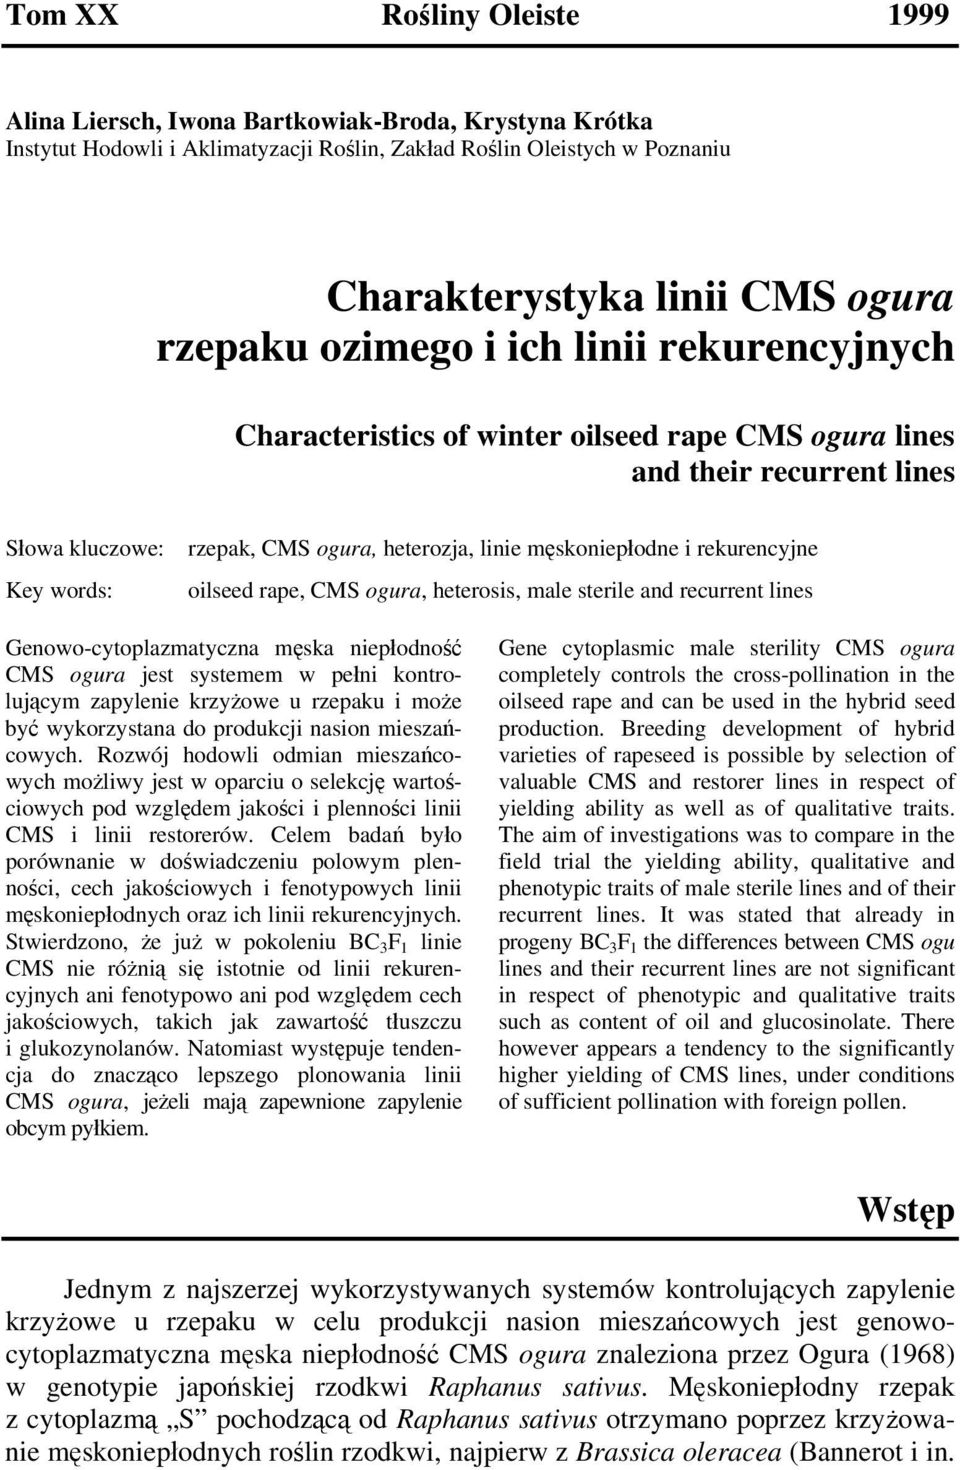 rekurencyjne oilseed rape, CMS ogura, heterosis, male sterile and recurrent lines Genowo-cytoplazmatyczna męska niepłodność CMS ogura jest systemem w pełni kontrolującym zapylenie krzyżowe u rzepaku